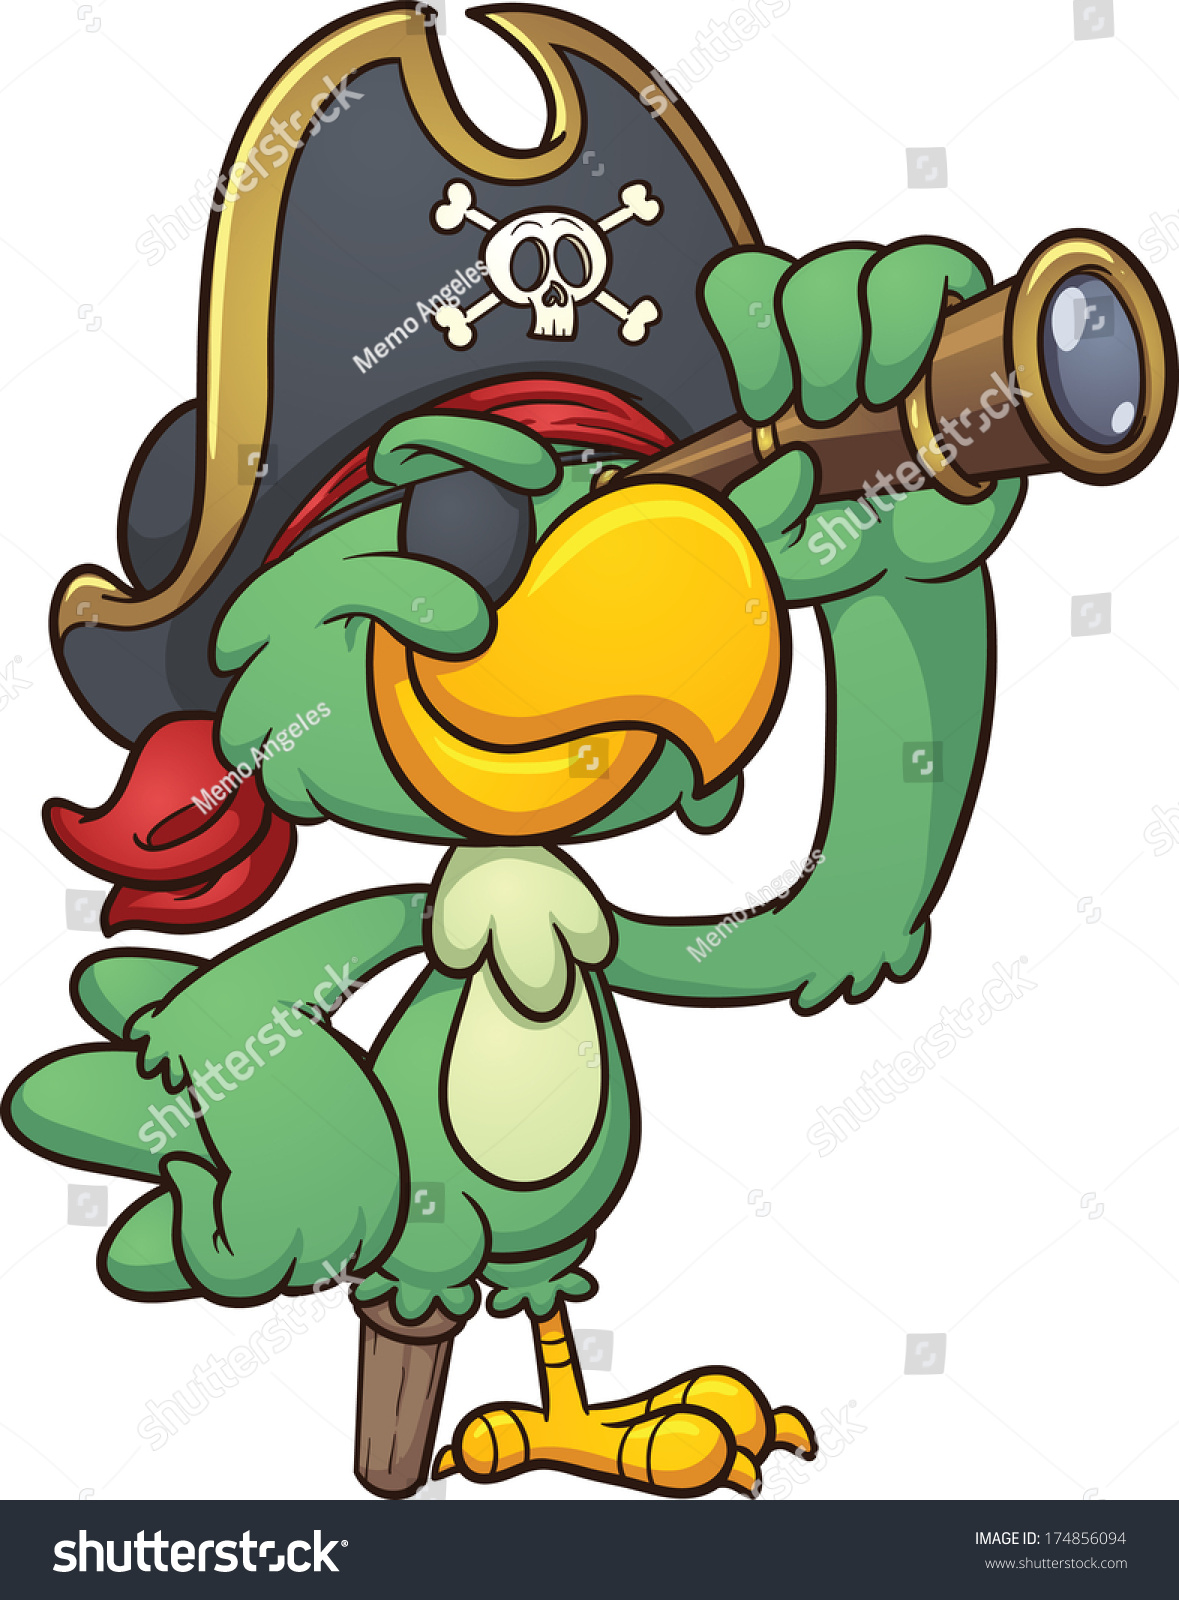 Cartoon Pirate Parrot Looking Through A Spyglass. Vector Clip Art ...